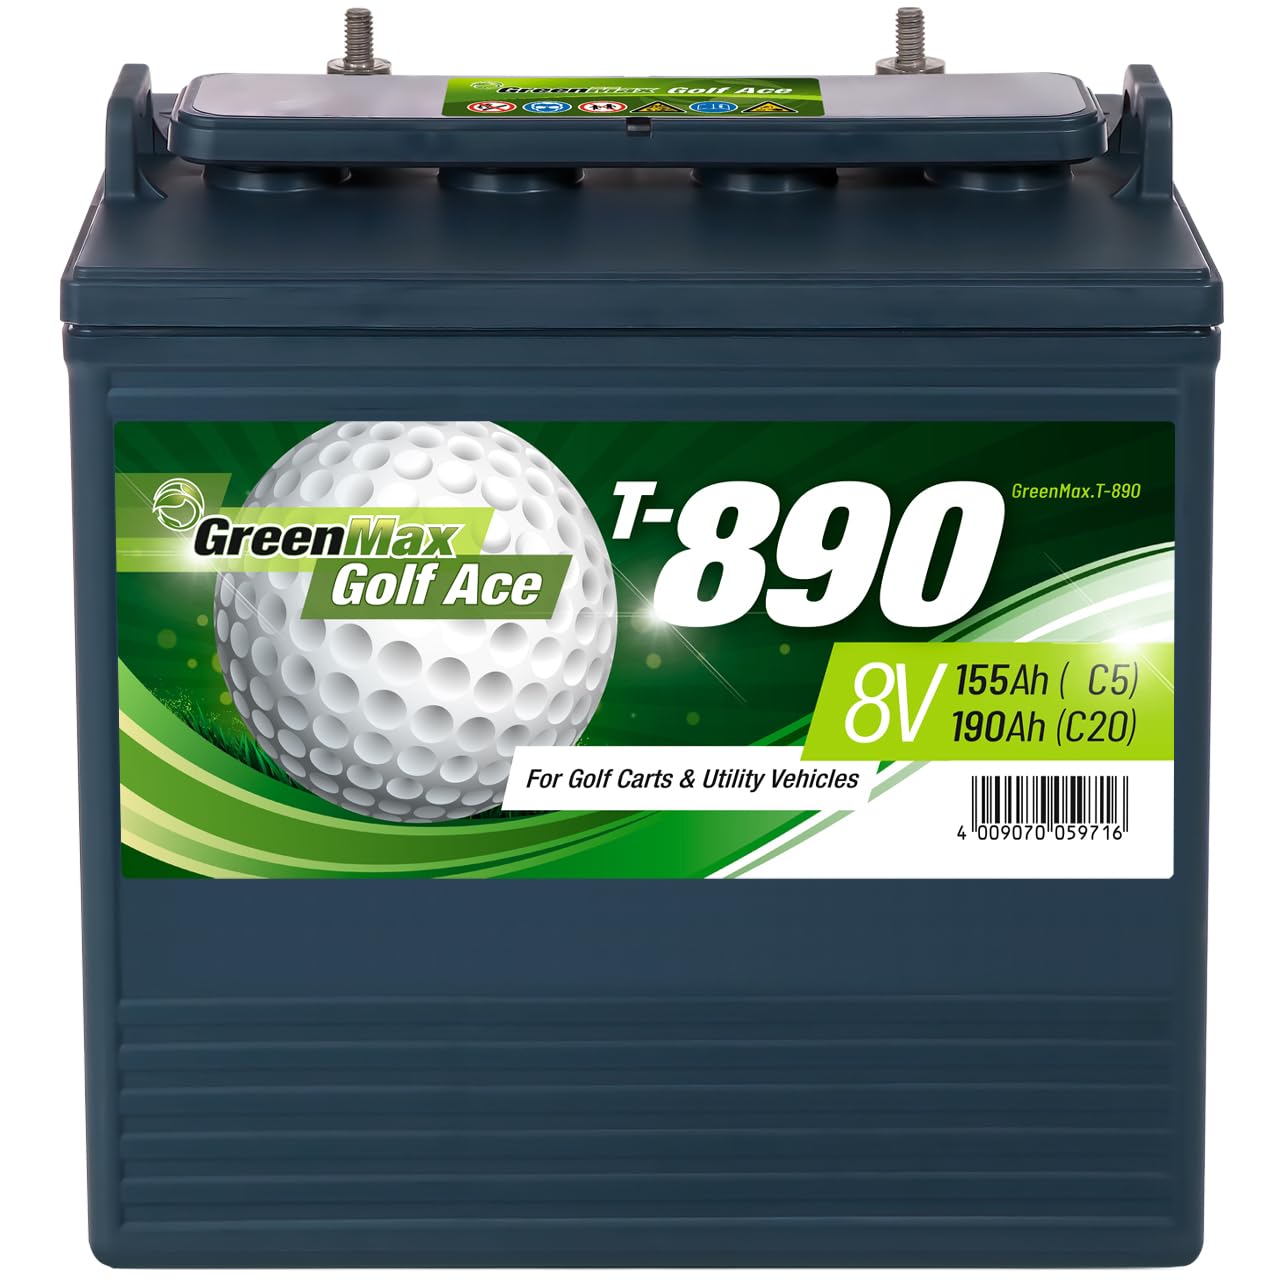 GreenMax Golf Ace T-890 (8V 190Ah) - Hochleistungs-Blei-Säure-Batterie für Golfcarts und Elektrofahrzeuge - Zuverlässig, Langlebig, Effizient, 99% Recycelbar von BIG